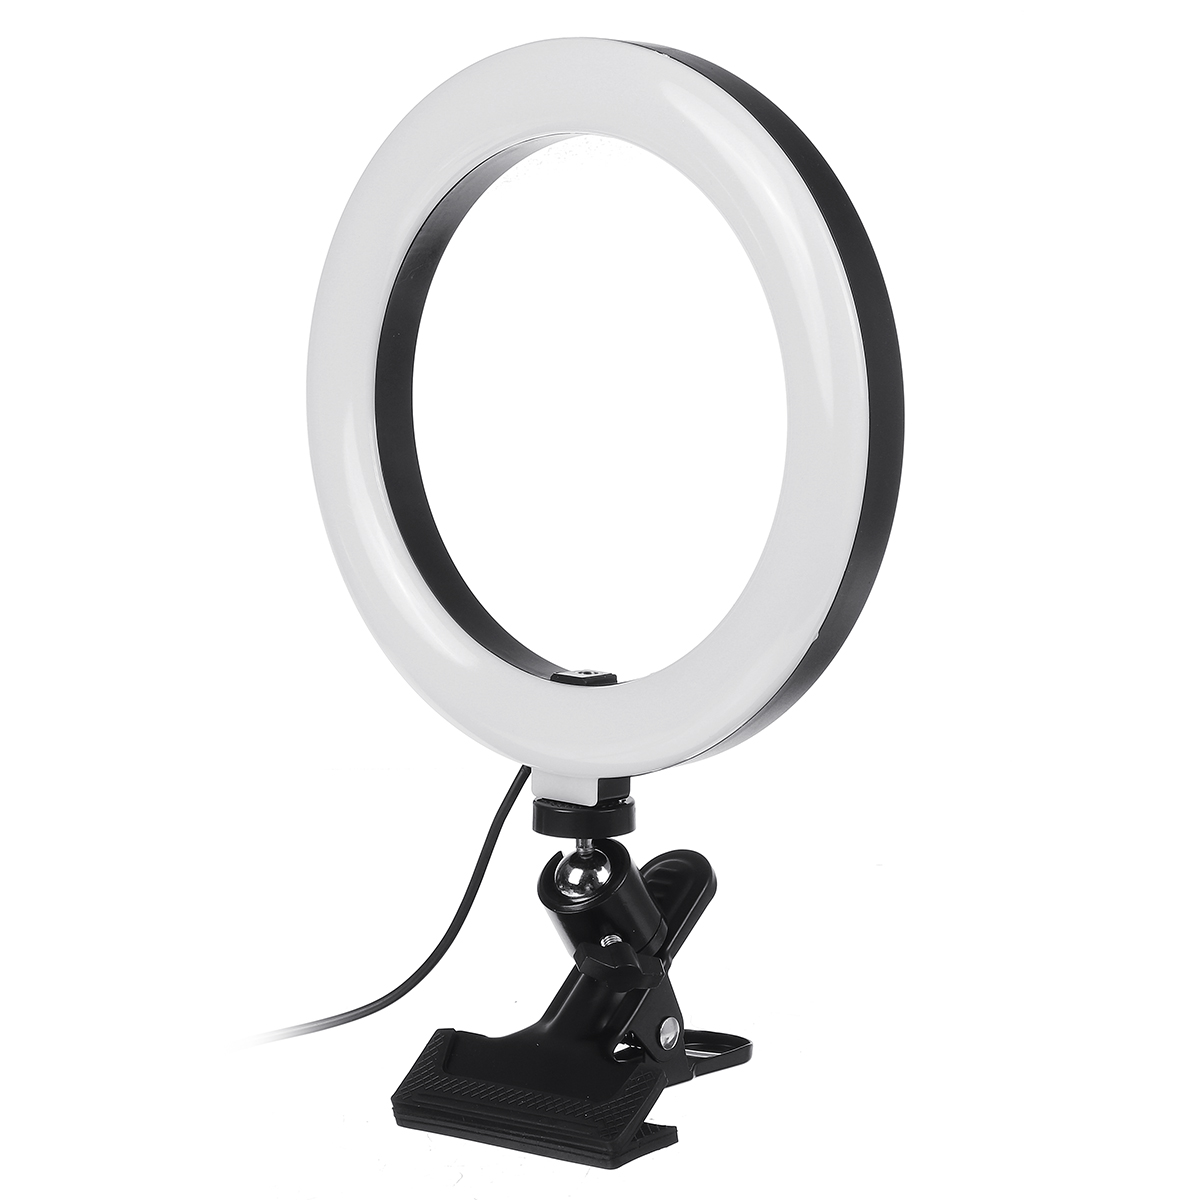 20cm-3-Modes-Fill-Light-Desktop-LED-Ring-Light-Selfie-Lighting-Beauty-with-Macbook-Table-Clip-for-Li-1866866-4